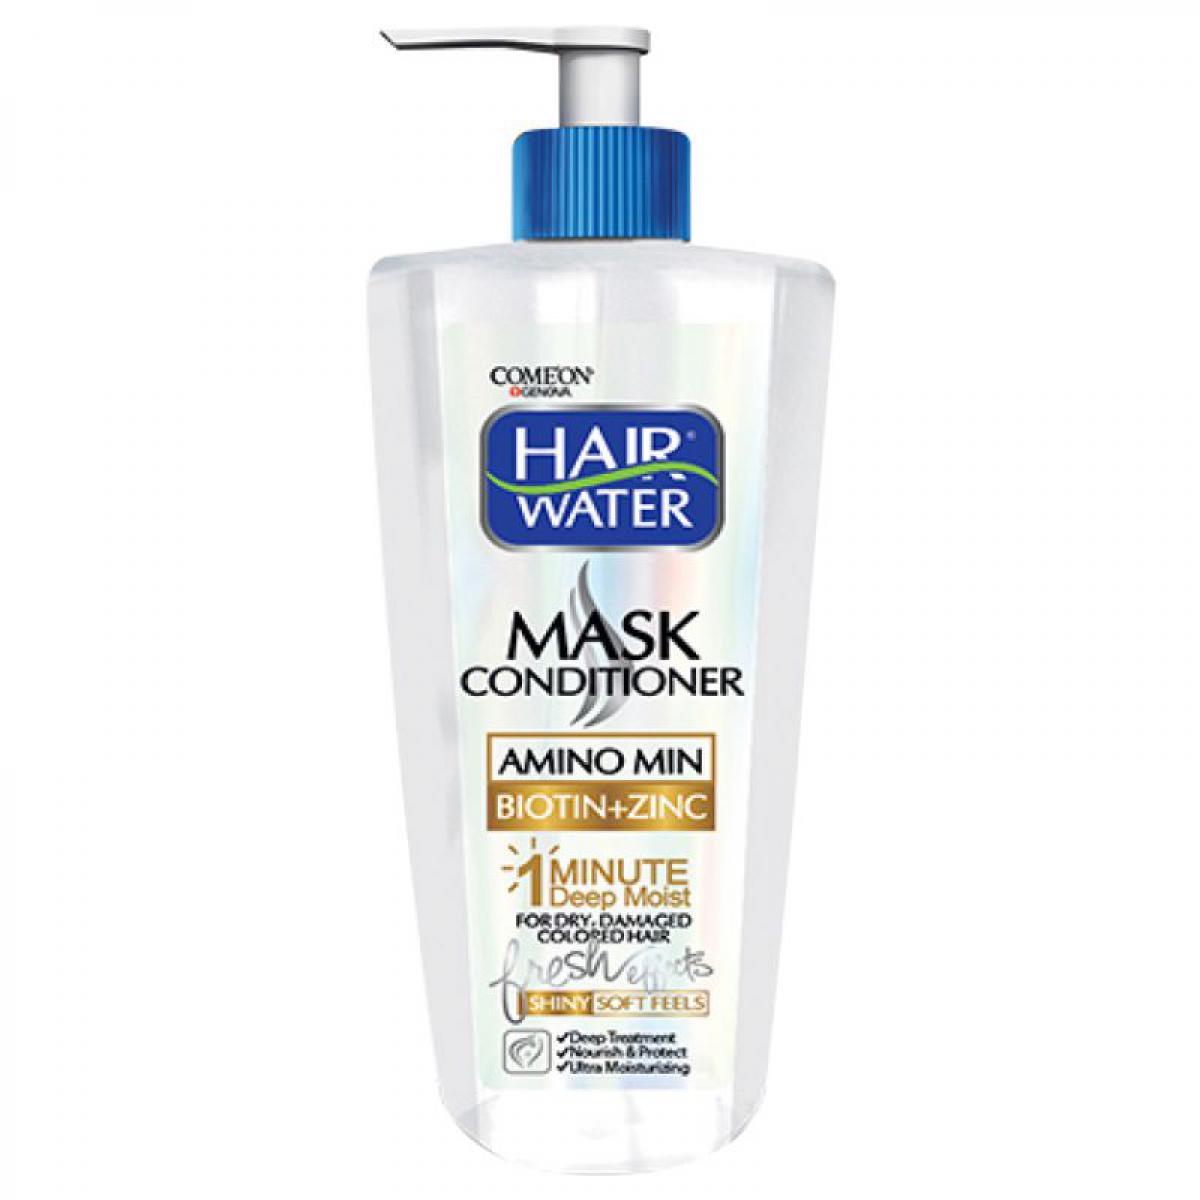 ماسک مو هیر واترمناسب موهای خشک، آسیب دیده و رنگ شده - Comeon Hair Mask For Dry, Damaged And Colored Hair 400ml